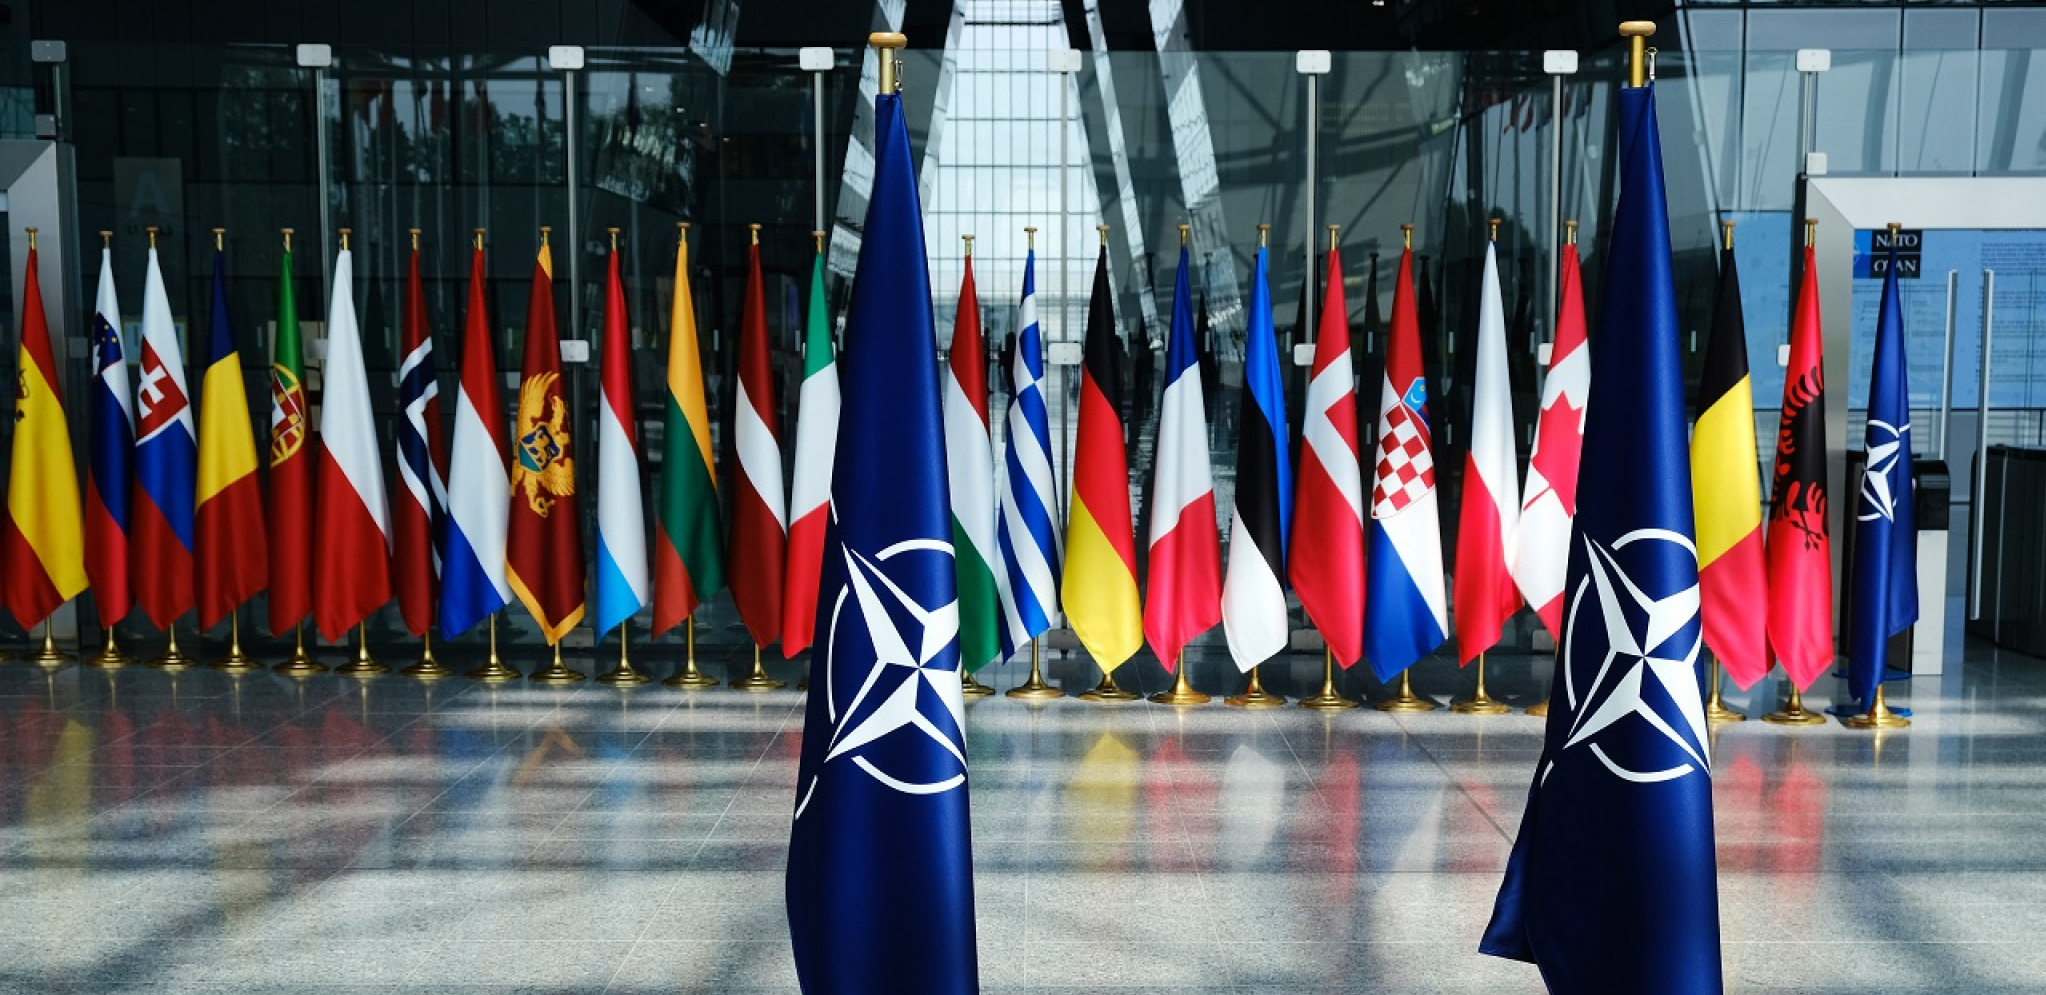 DA LI ĆE SE TOK SUKOBA U UKRAJINI PROMENITI? Ekspert objašnjava šta će se desiti nakon ulaska Švedske i Finske u NATO